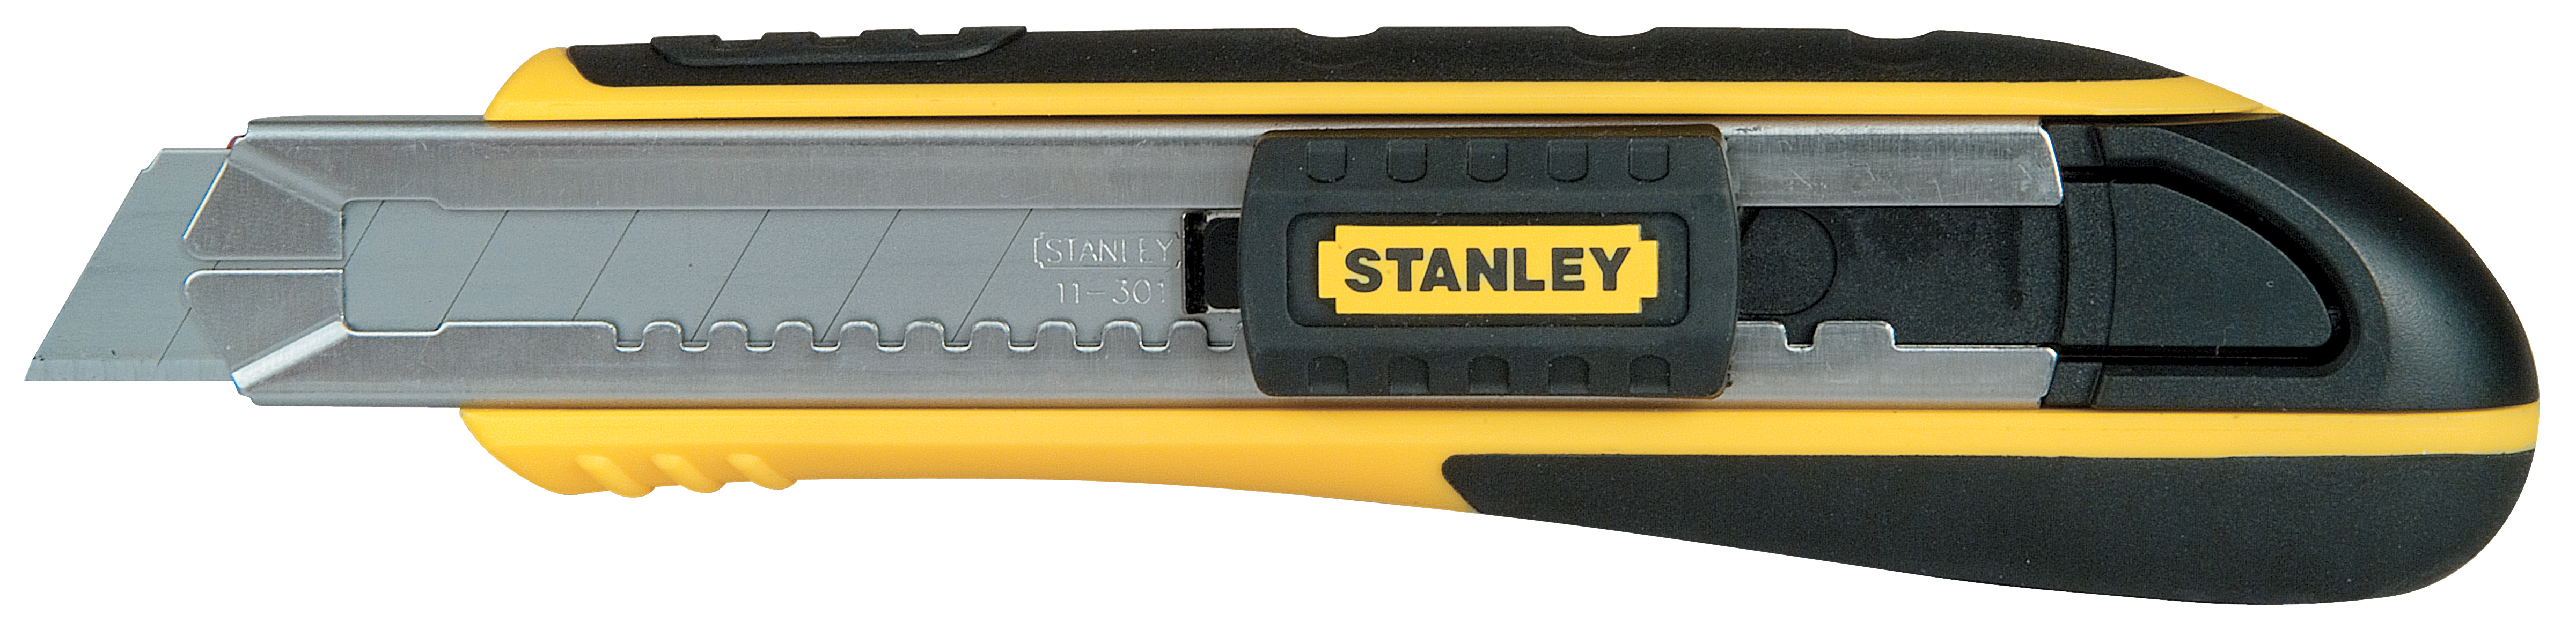 Stanley Cuttermesser Fatmax 18mm mit Magazin